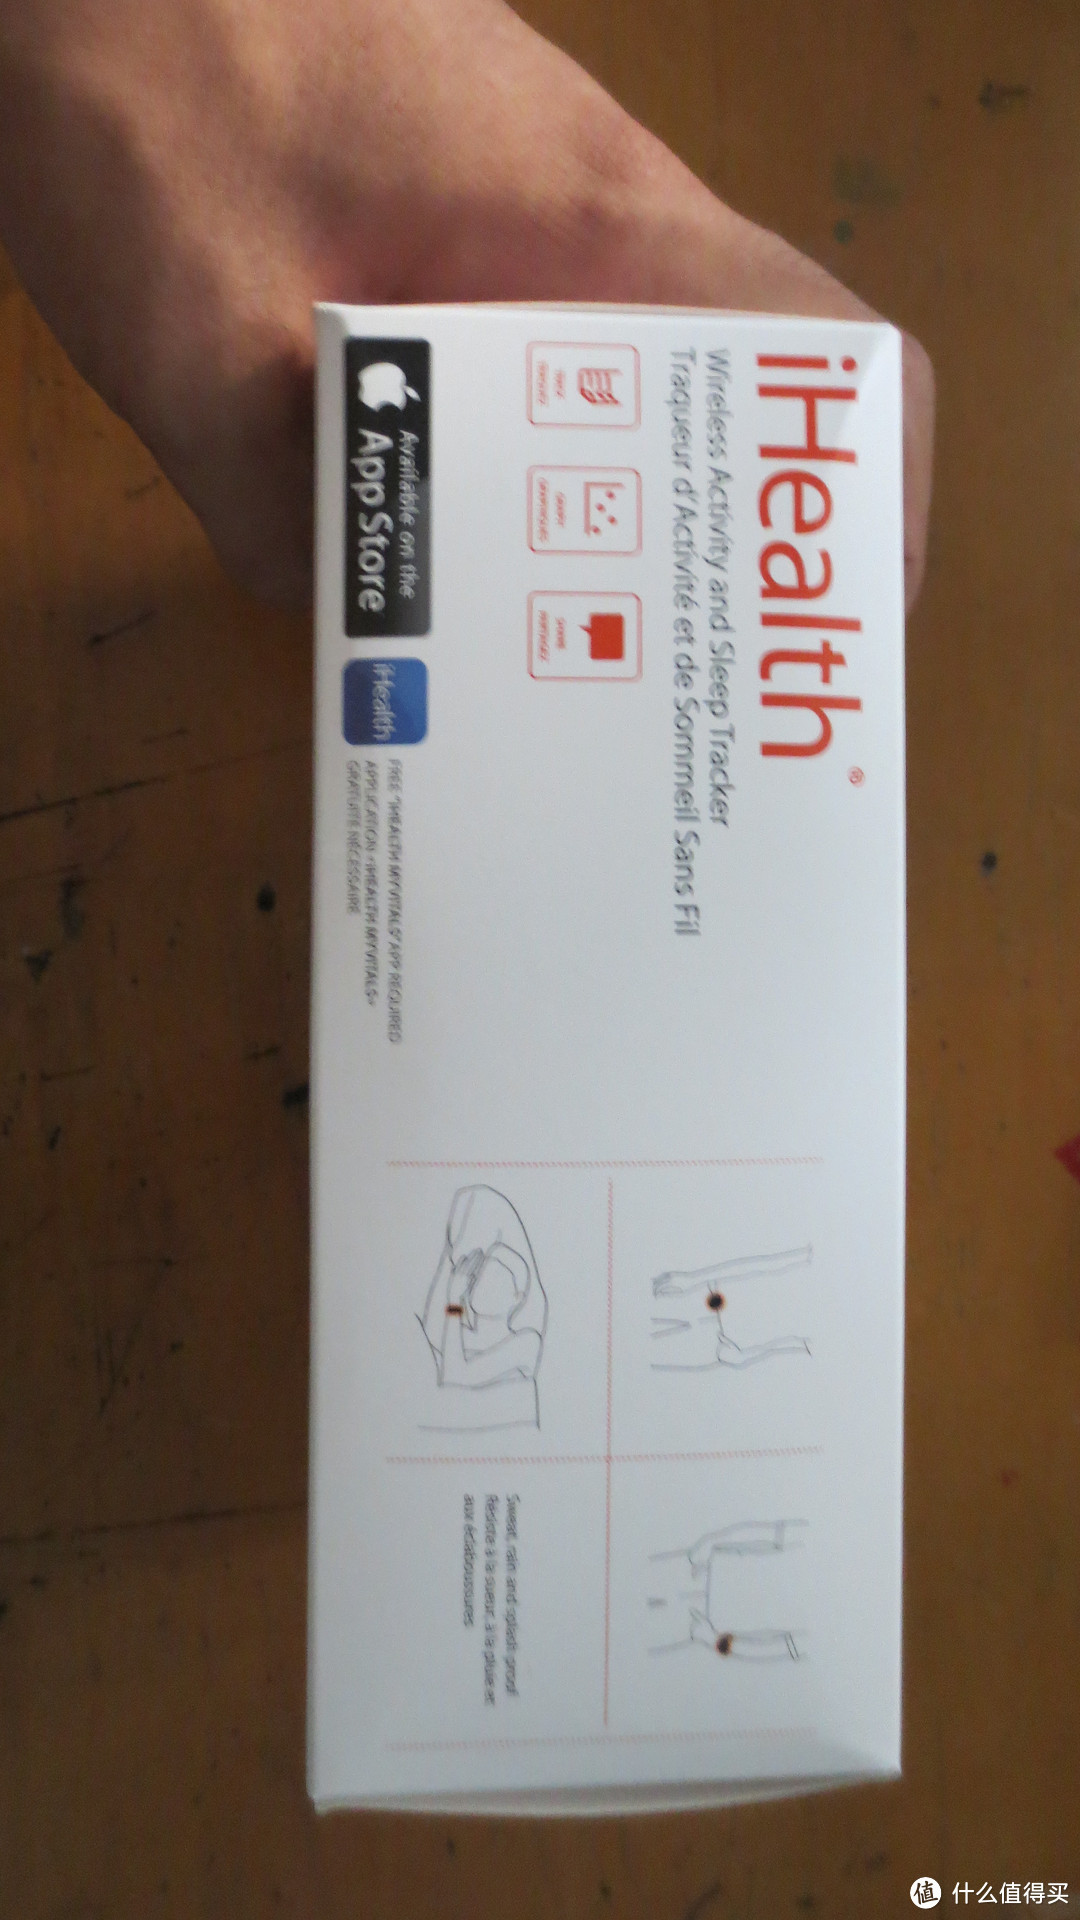 价格399的能够现实时间的计步器——iHealth 智能腕表 微信版